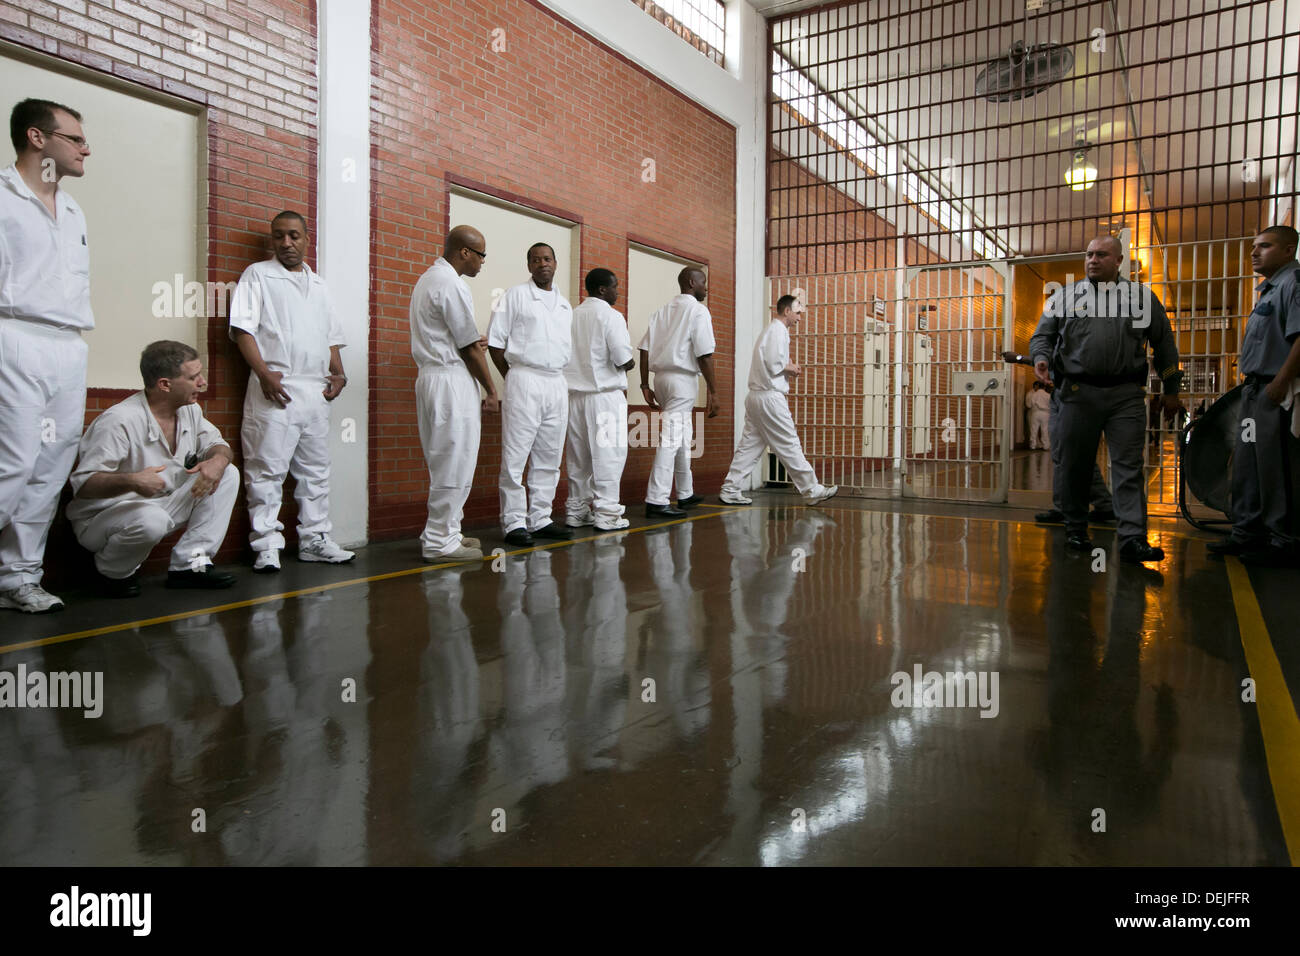 Les détenus de sexe masculin de l'unité Darrington près de Houston, au Texas, se présentent à l'intérieur de la prison pour assister à l'événement. ©MKC/Bob Daemmrich Photography, Inc Banque D'Images